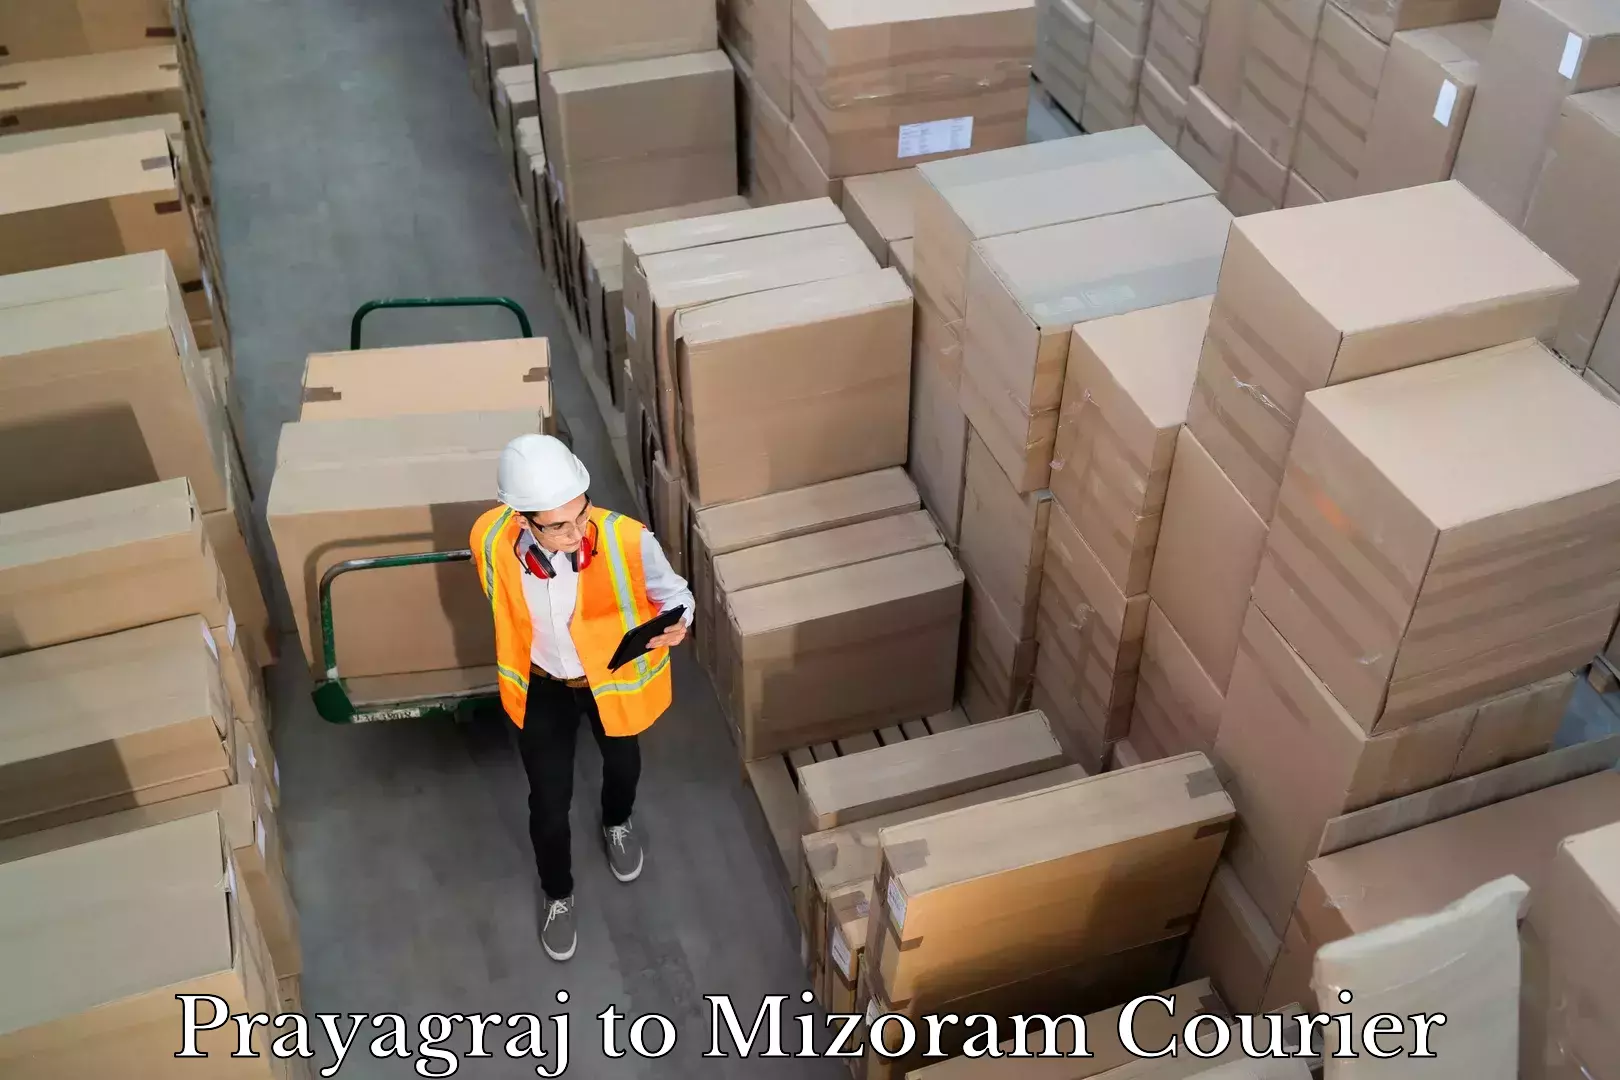 Customer-focused courier Prayagraj to Mizoram